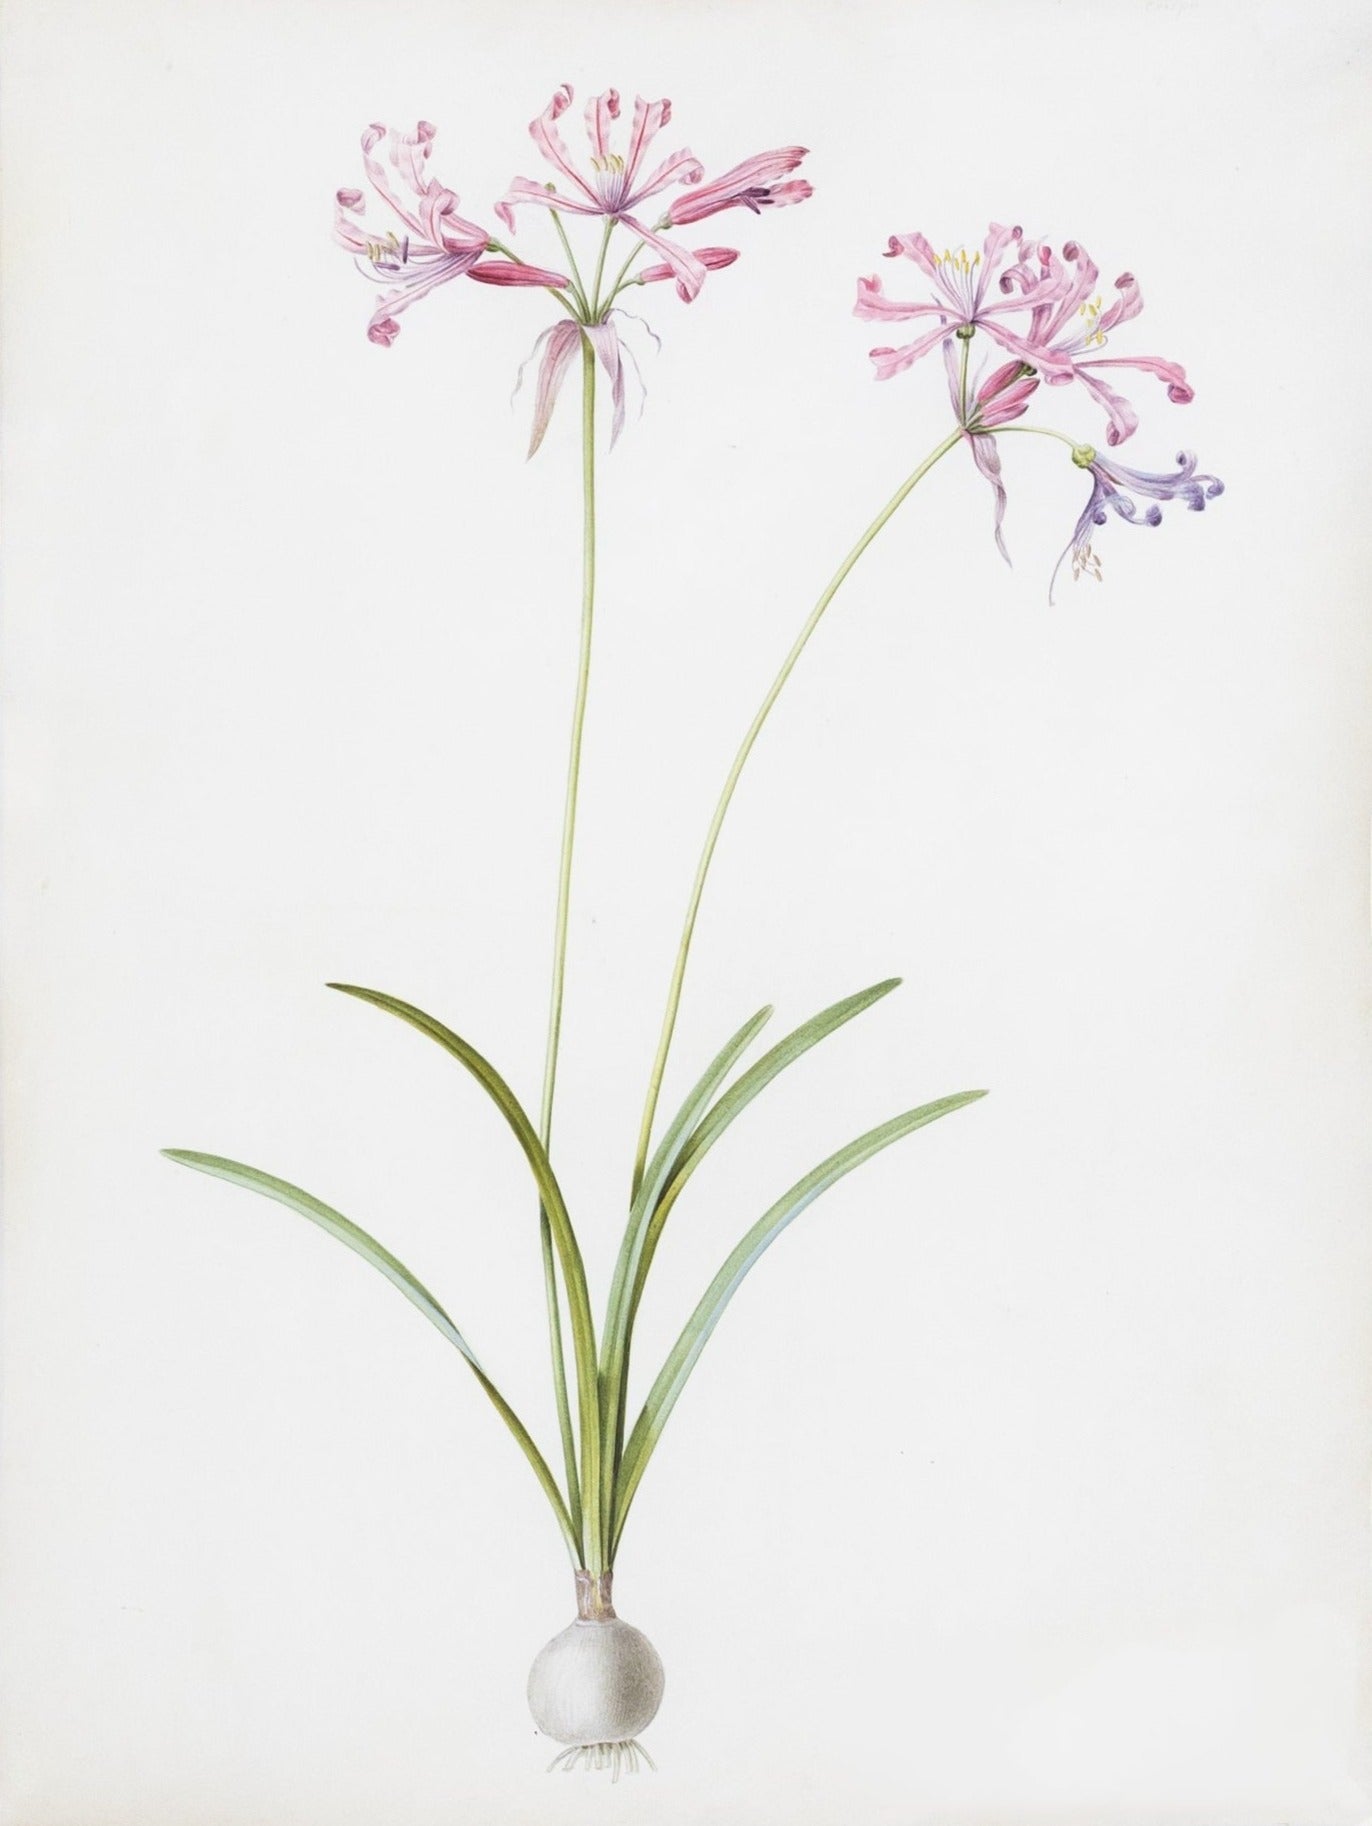 Redouté, Pierre-Joseph. "Mountain Lily". Prepared for Les Liliacées, ca. 1802-1816.